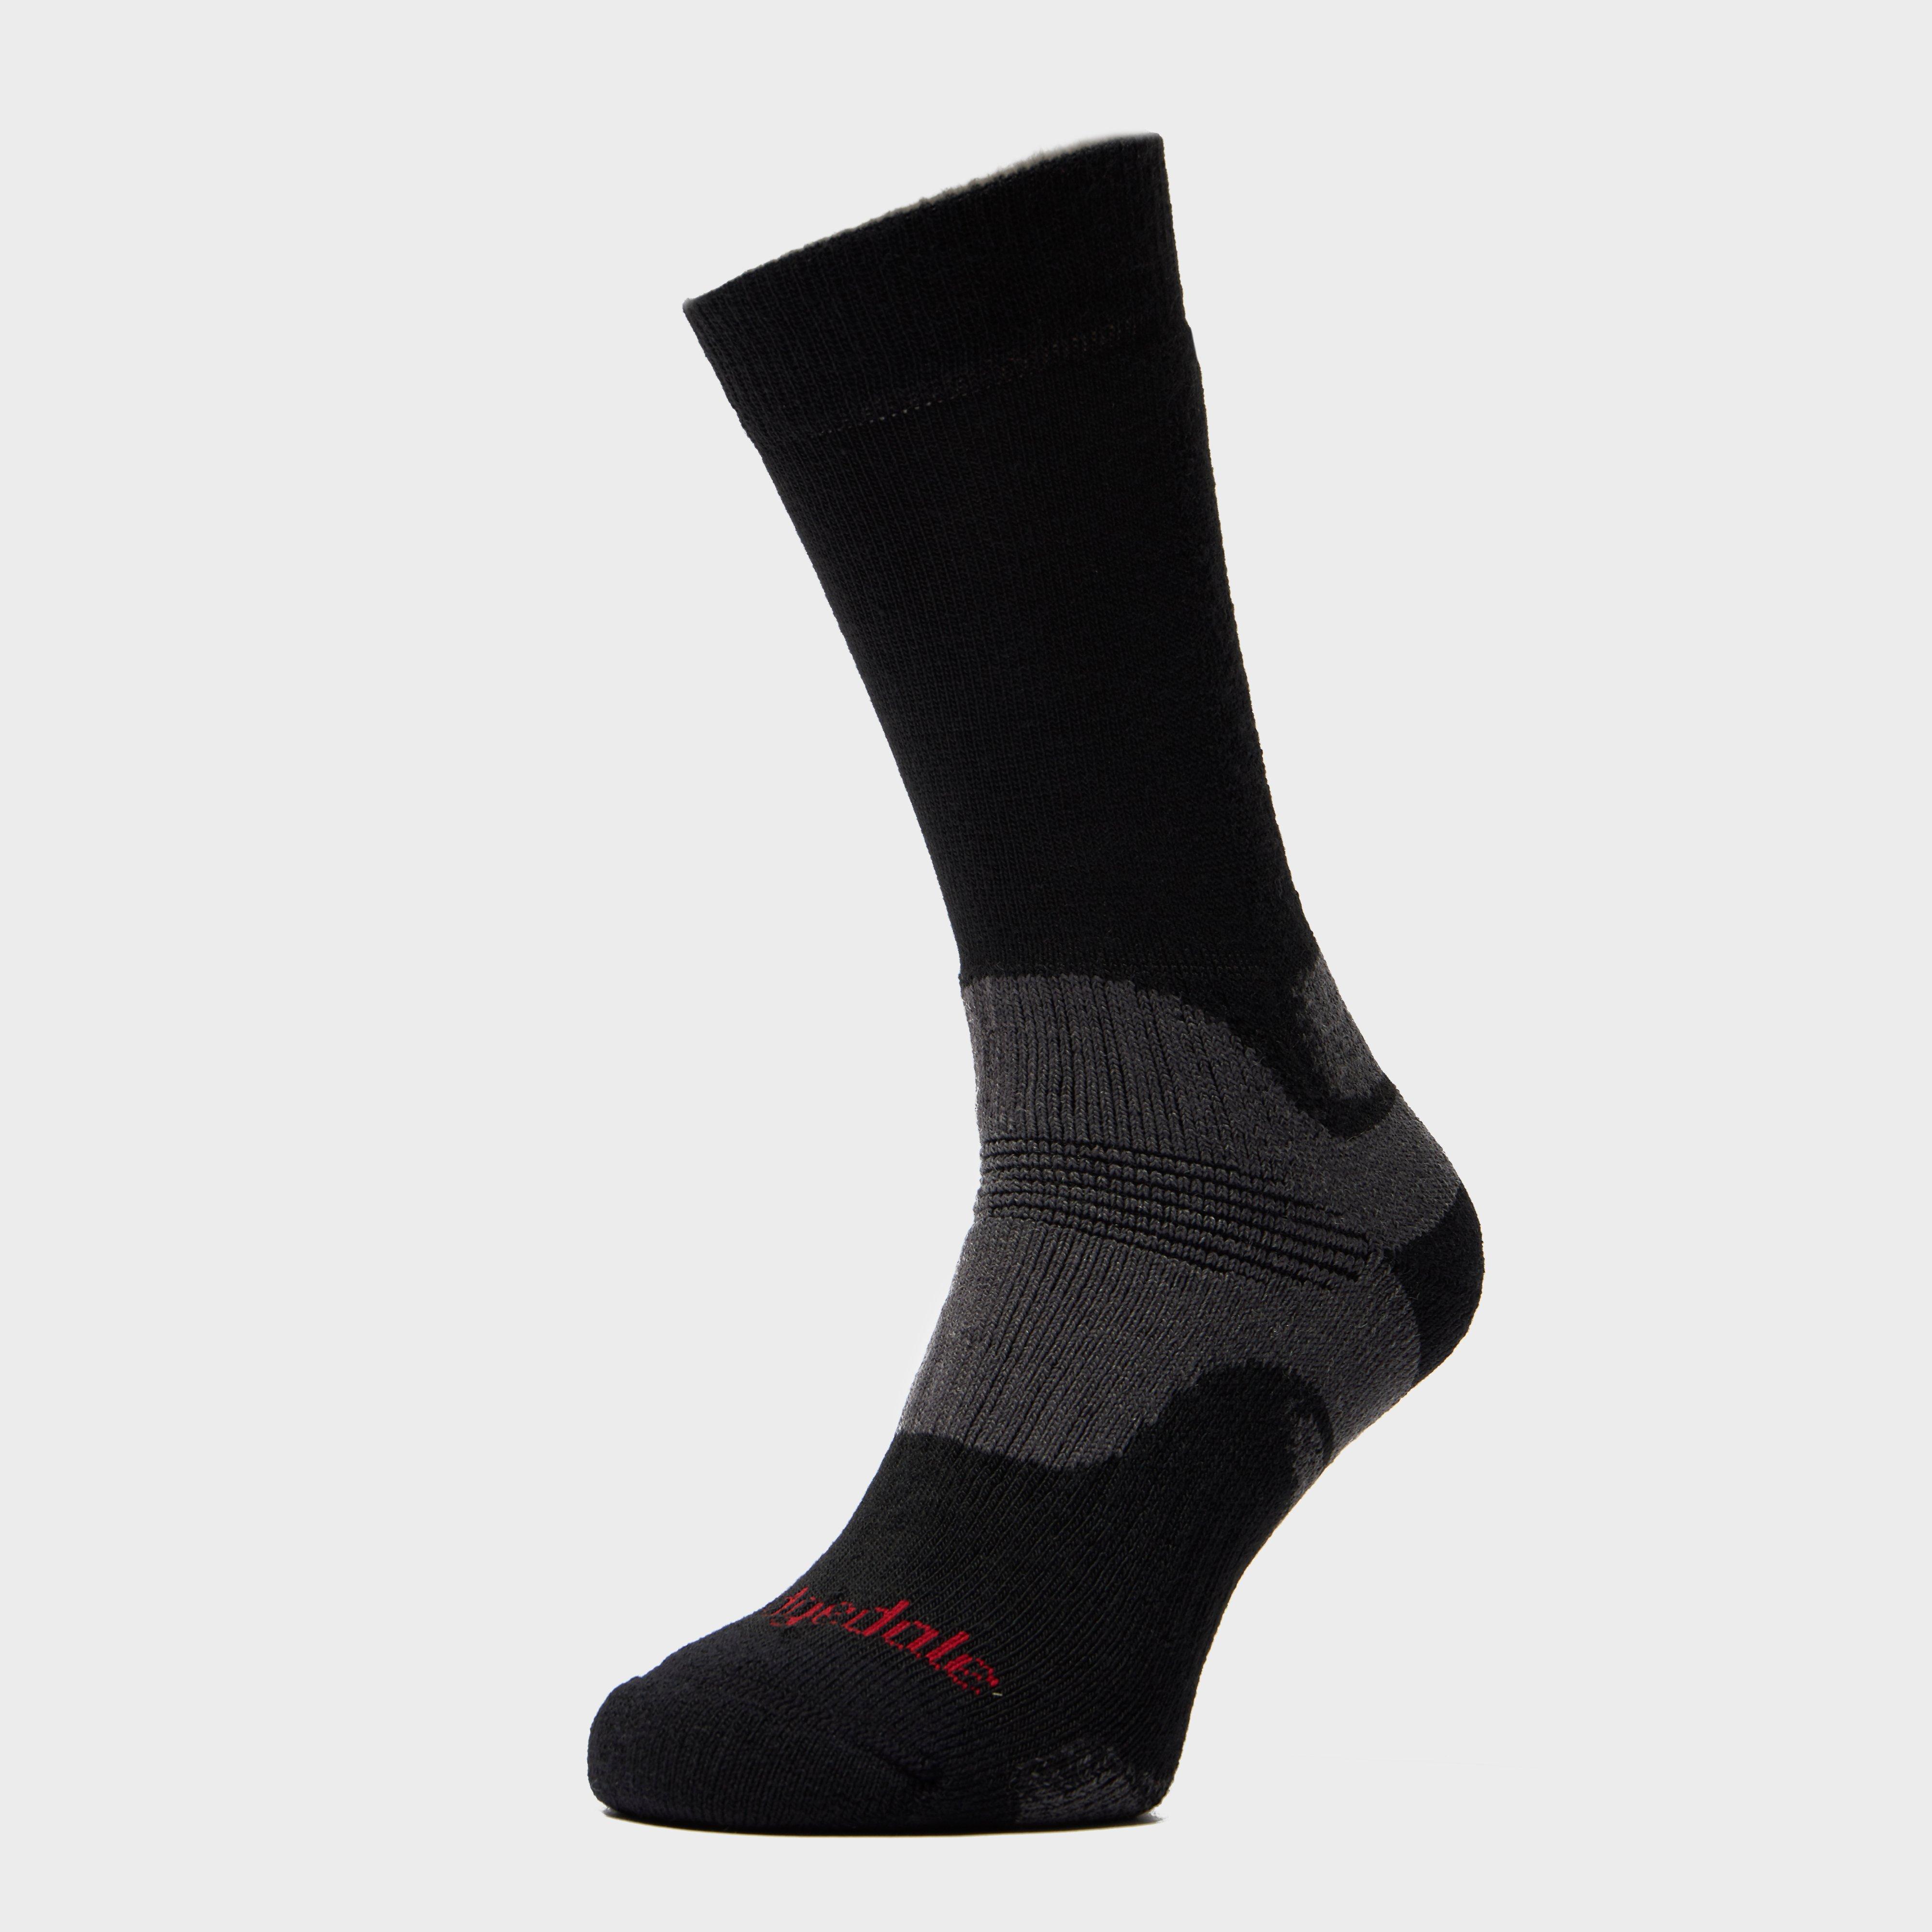 Bridgedale Women's Woolfusion Trekker Socks - Black, Black